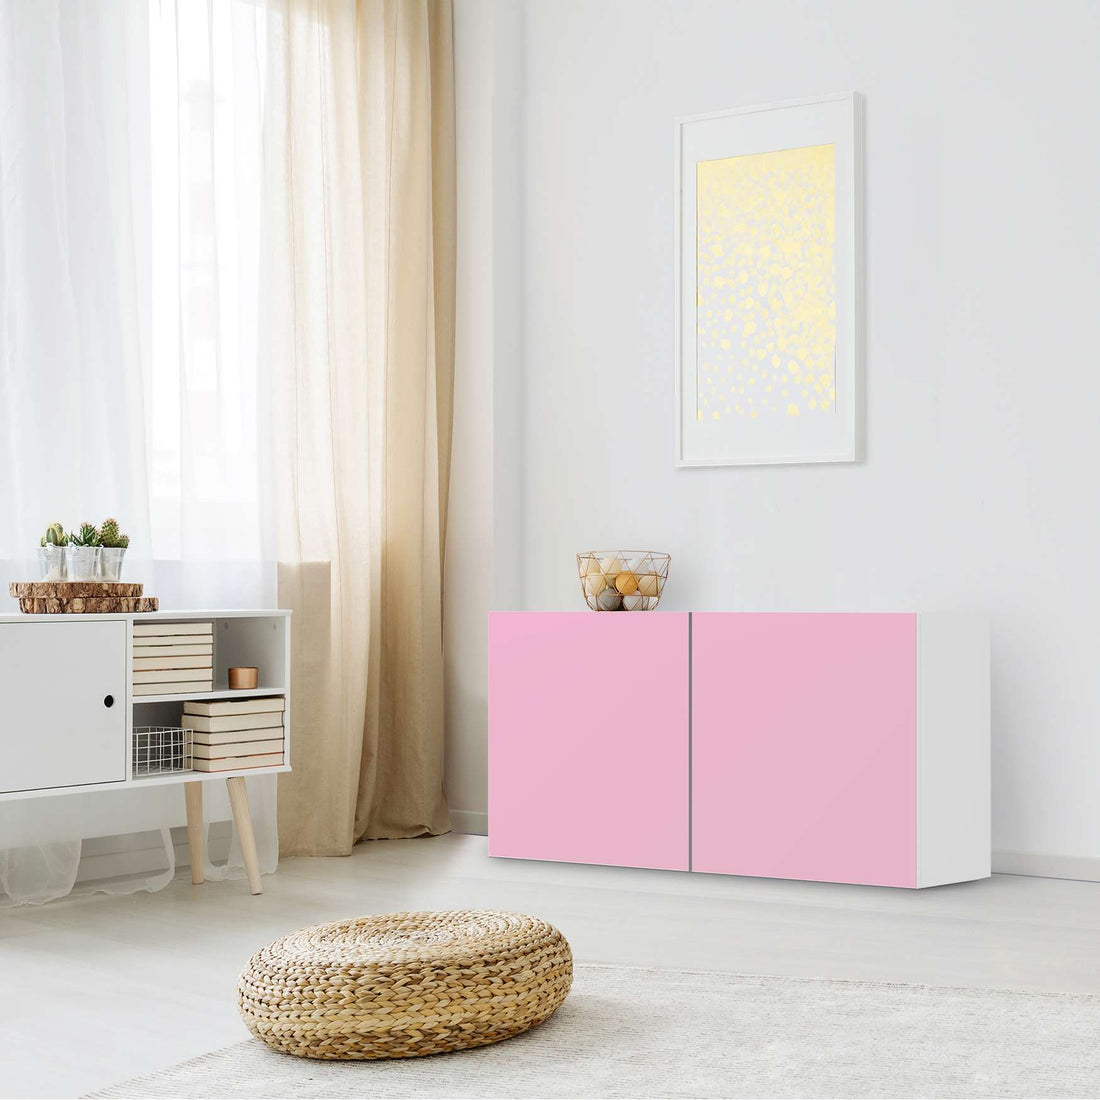 Folie für Möbel Pink Light - IKEA Besta Regal Quer 2 Türen - Wohnzimmer